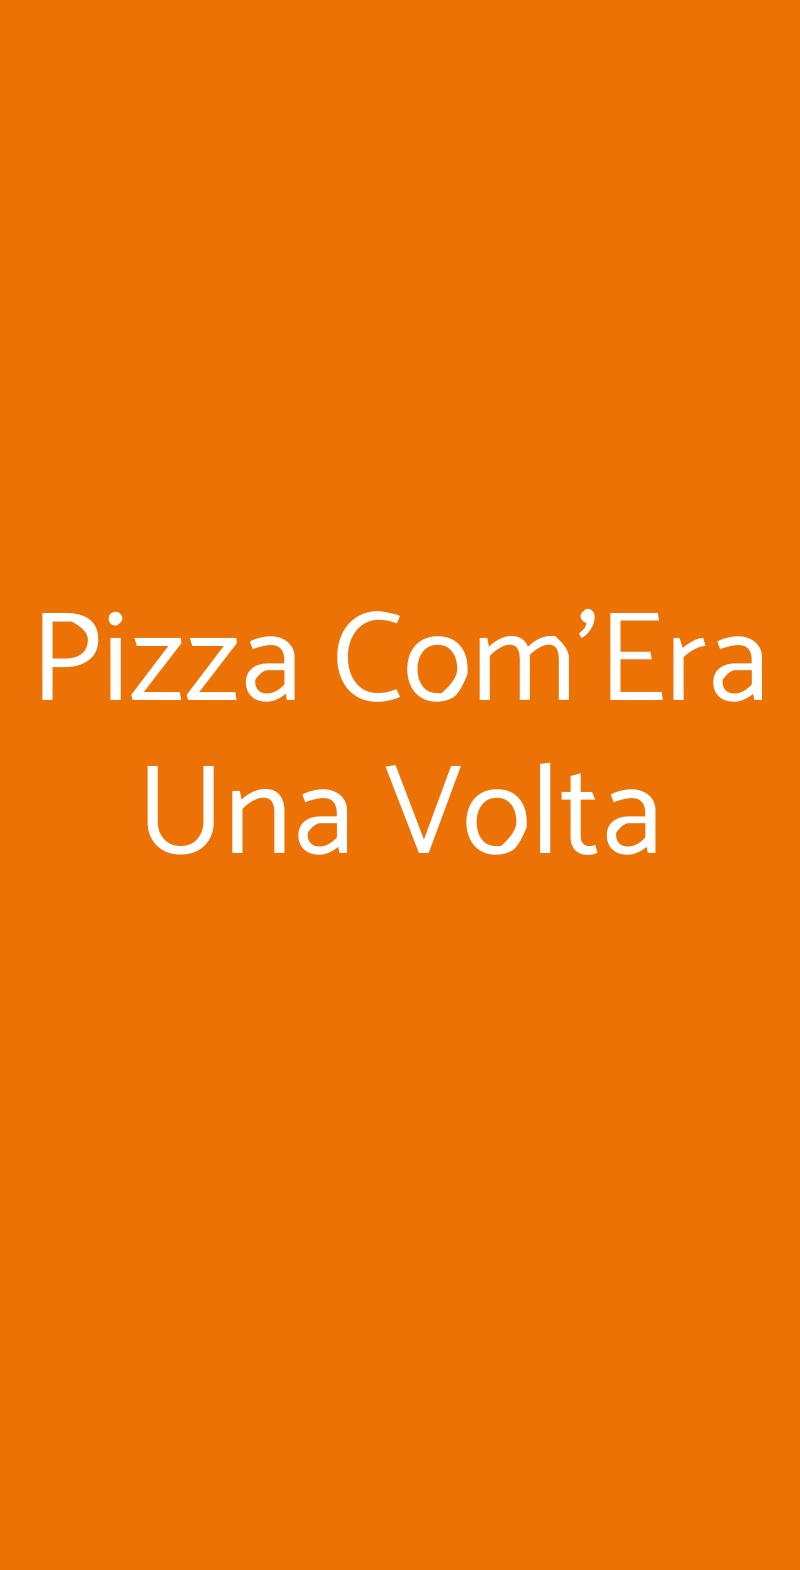 Pizza Com'Era Una Volta Roma menù 1 pagina